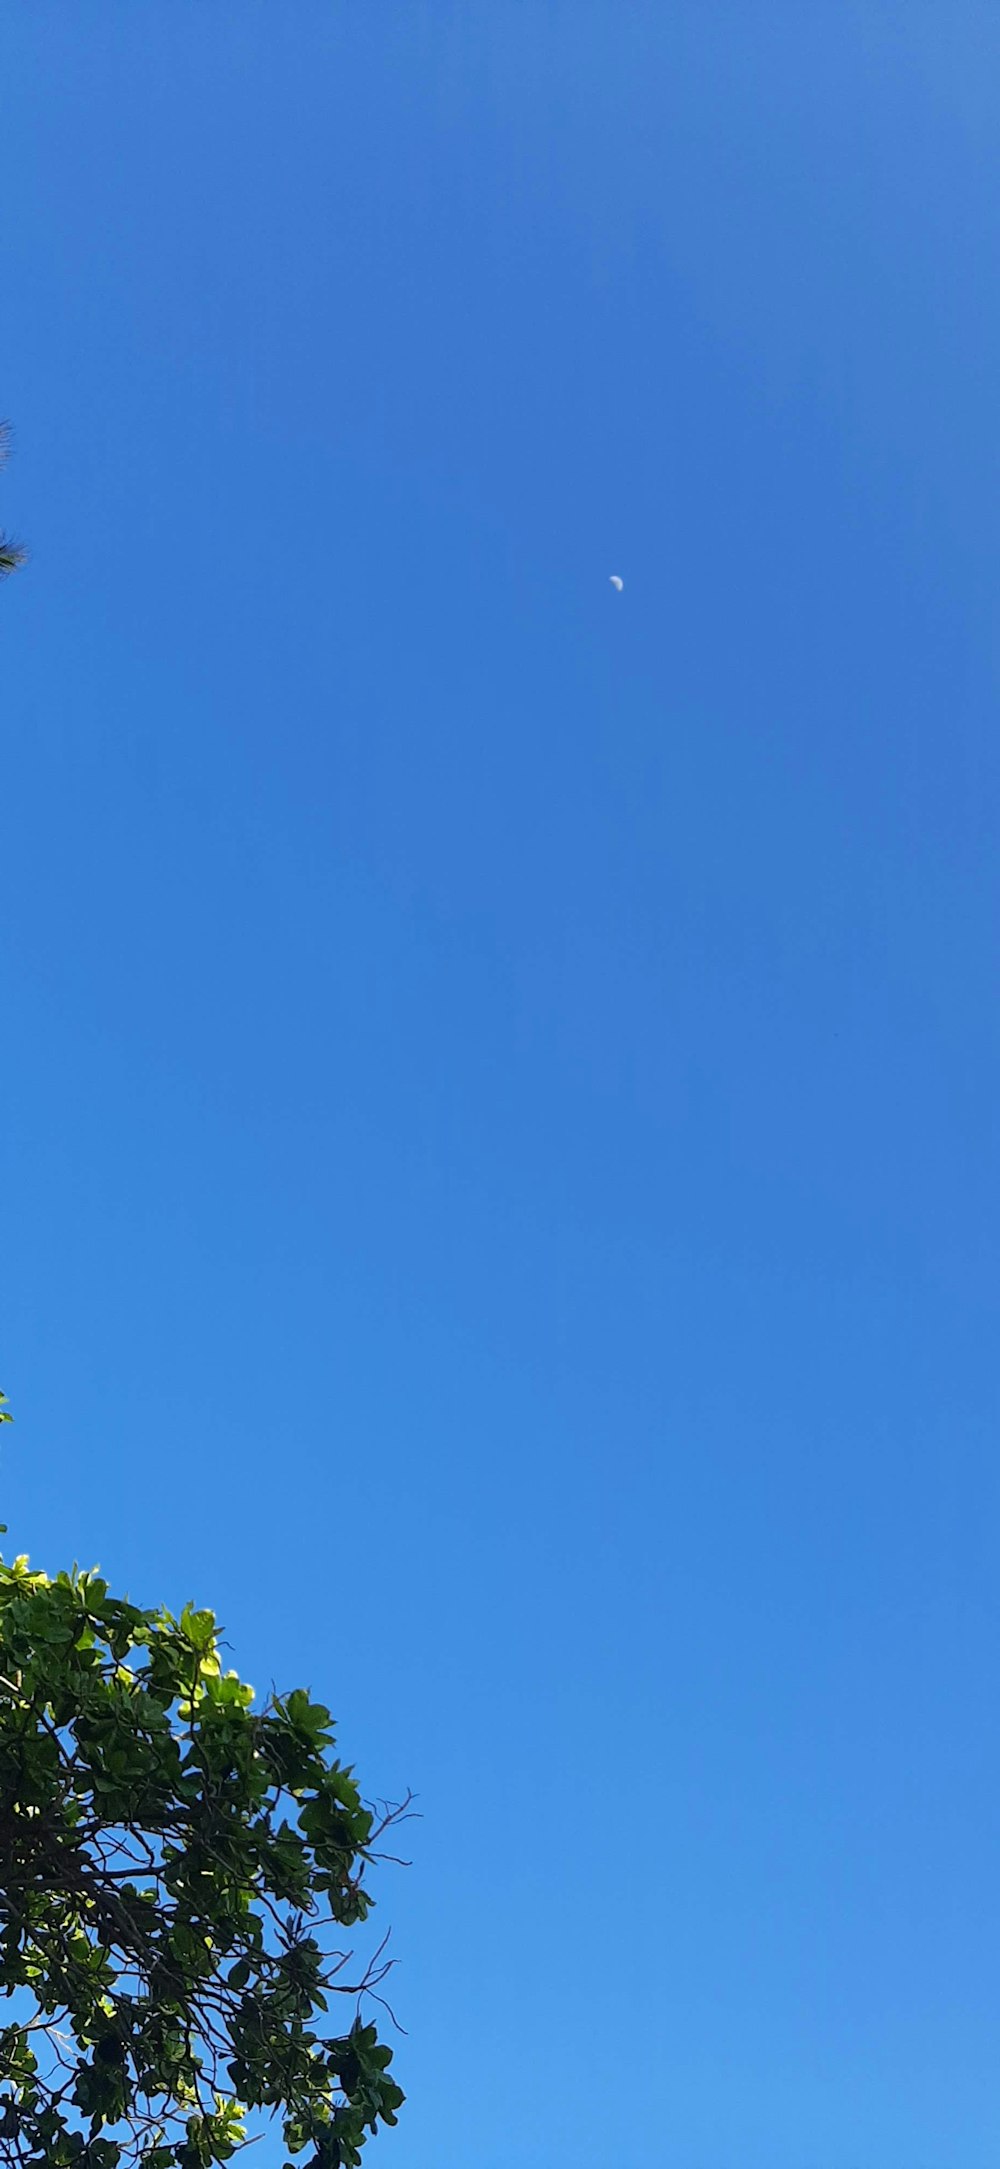 푸른 하늘을 높이 날고 있는 비행기